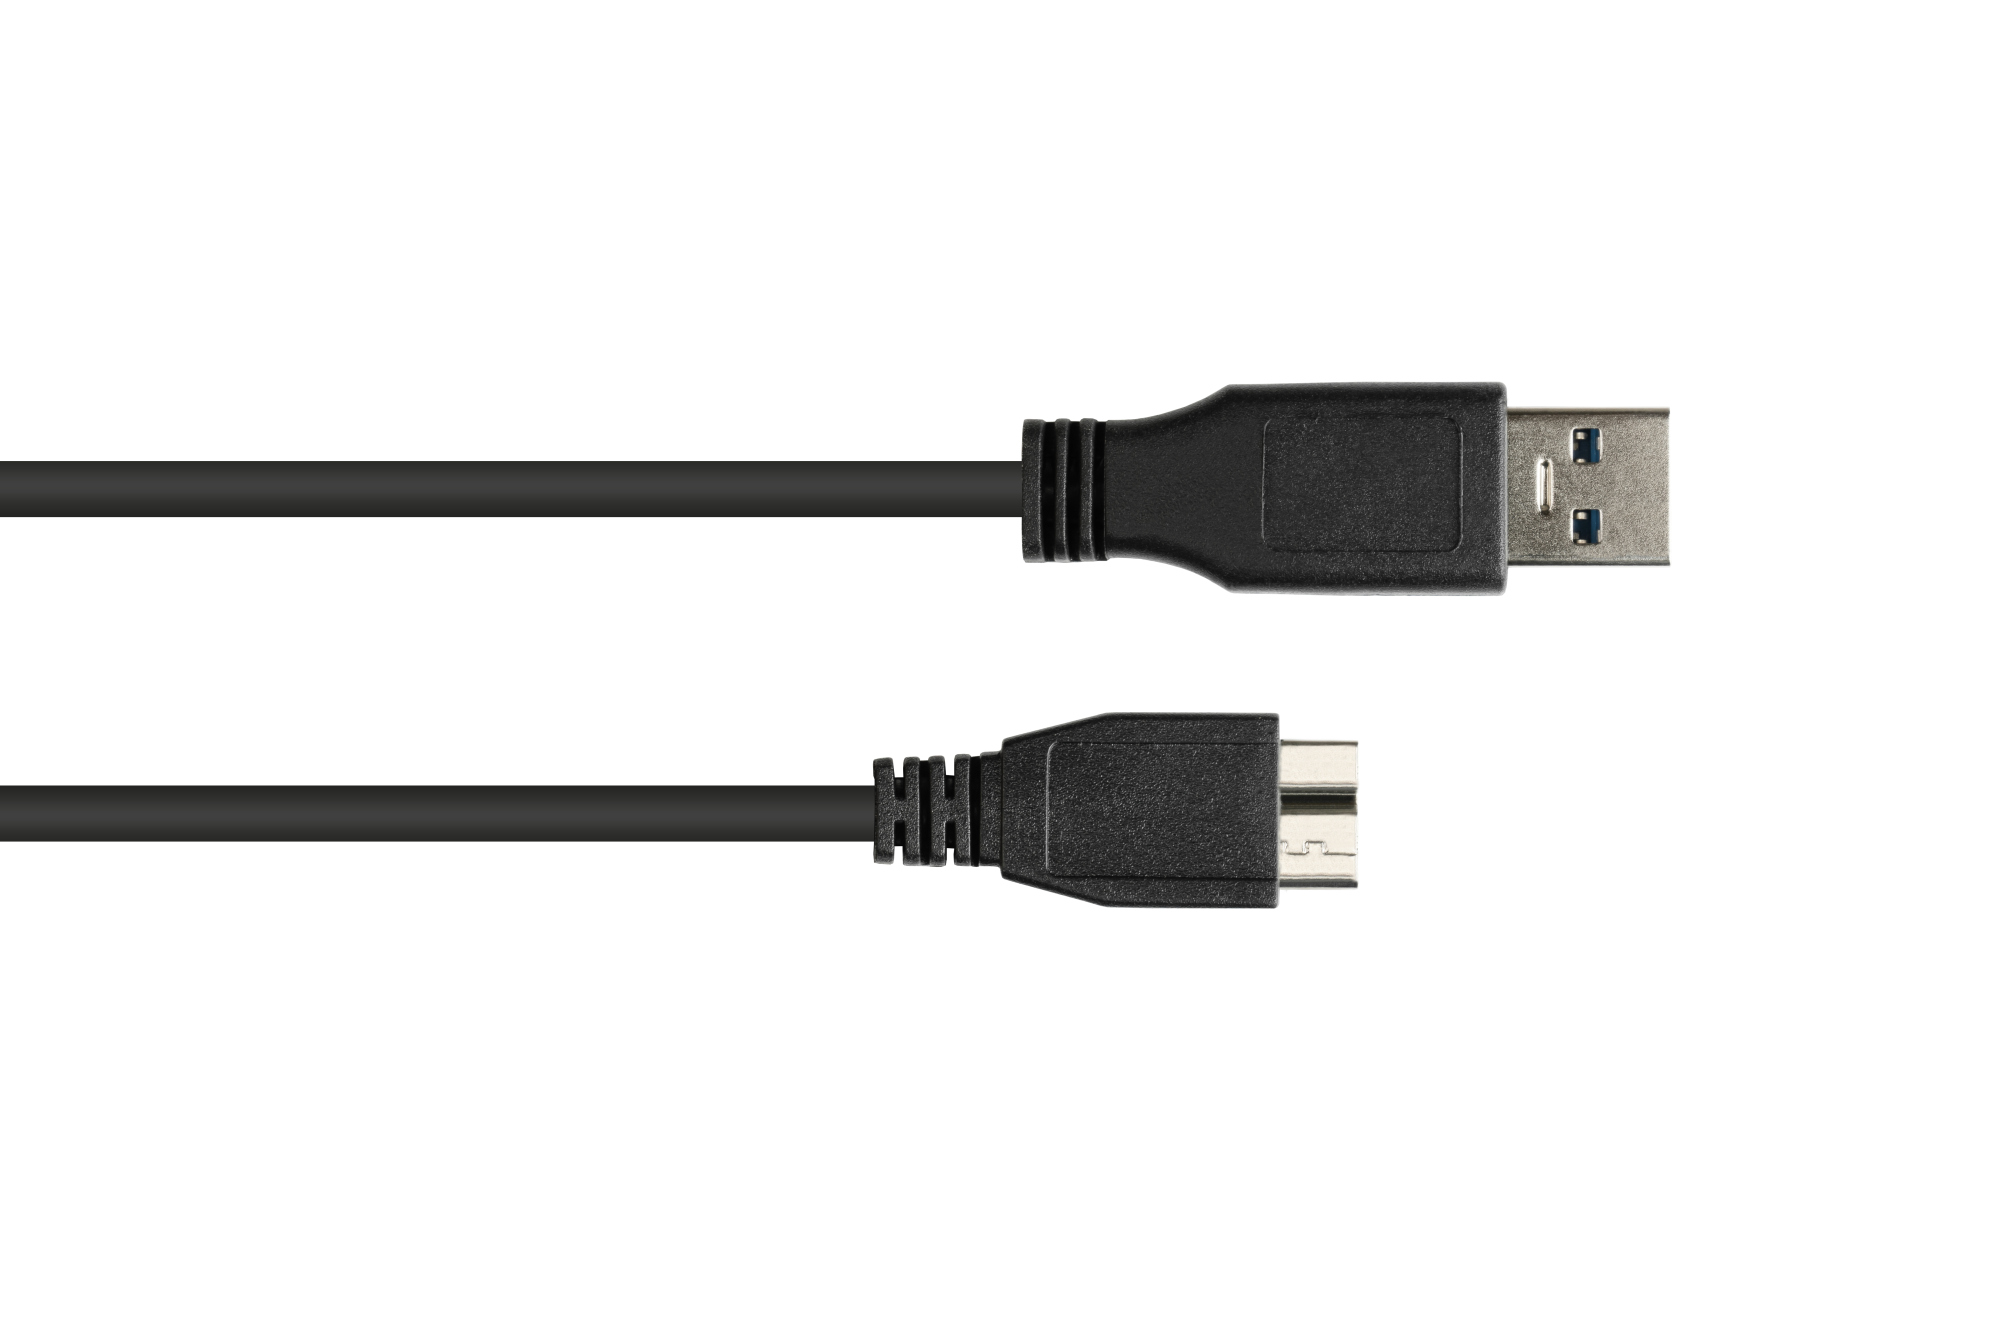 Anschlusskabel USB 3.0 Stecker A an Stecker Micro B, schwarz, 3m, Good Connections®